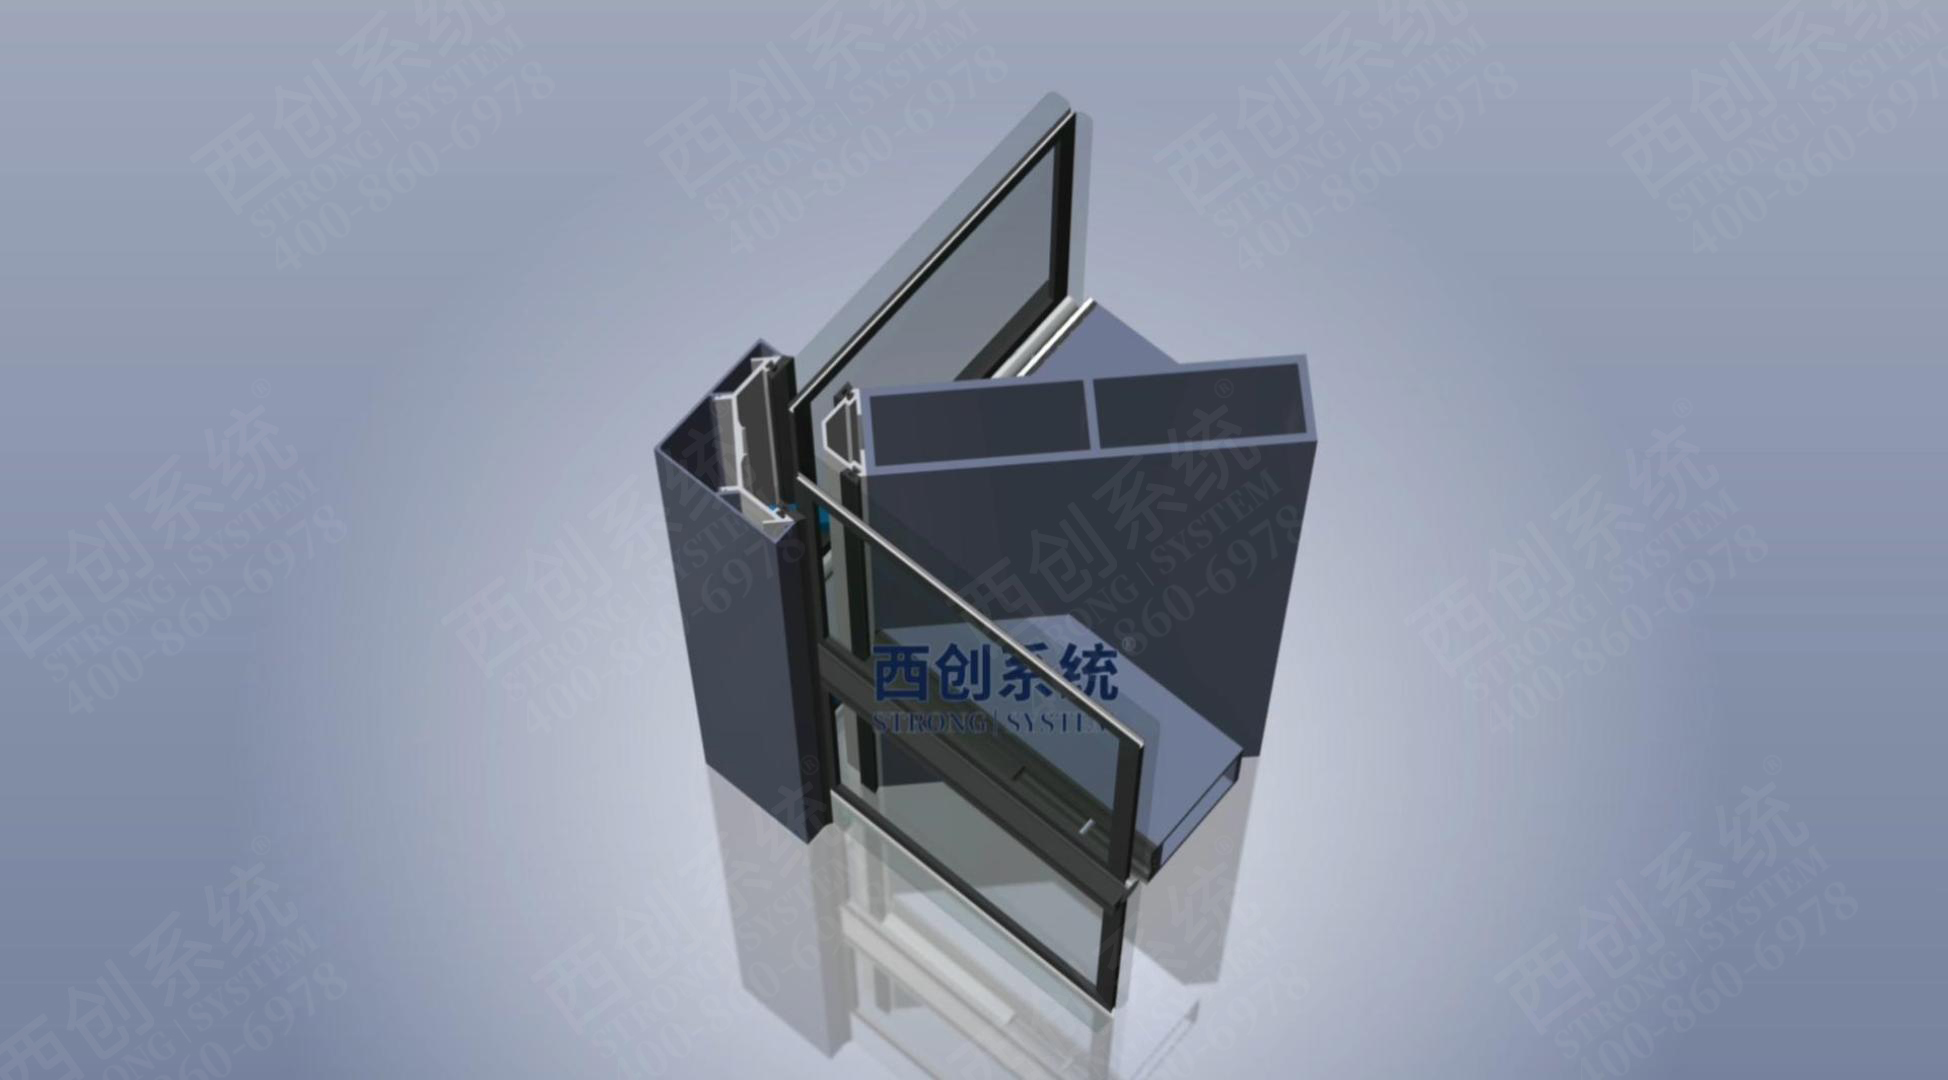 上海医院项目日型、矩形精制钢玻璃幕墙系统图纸深化 - 西创系统(图13)